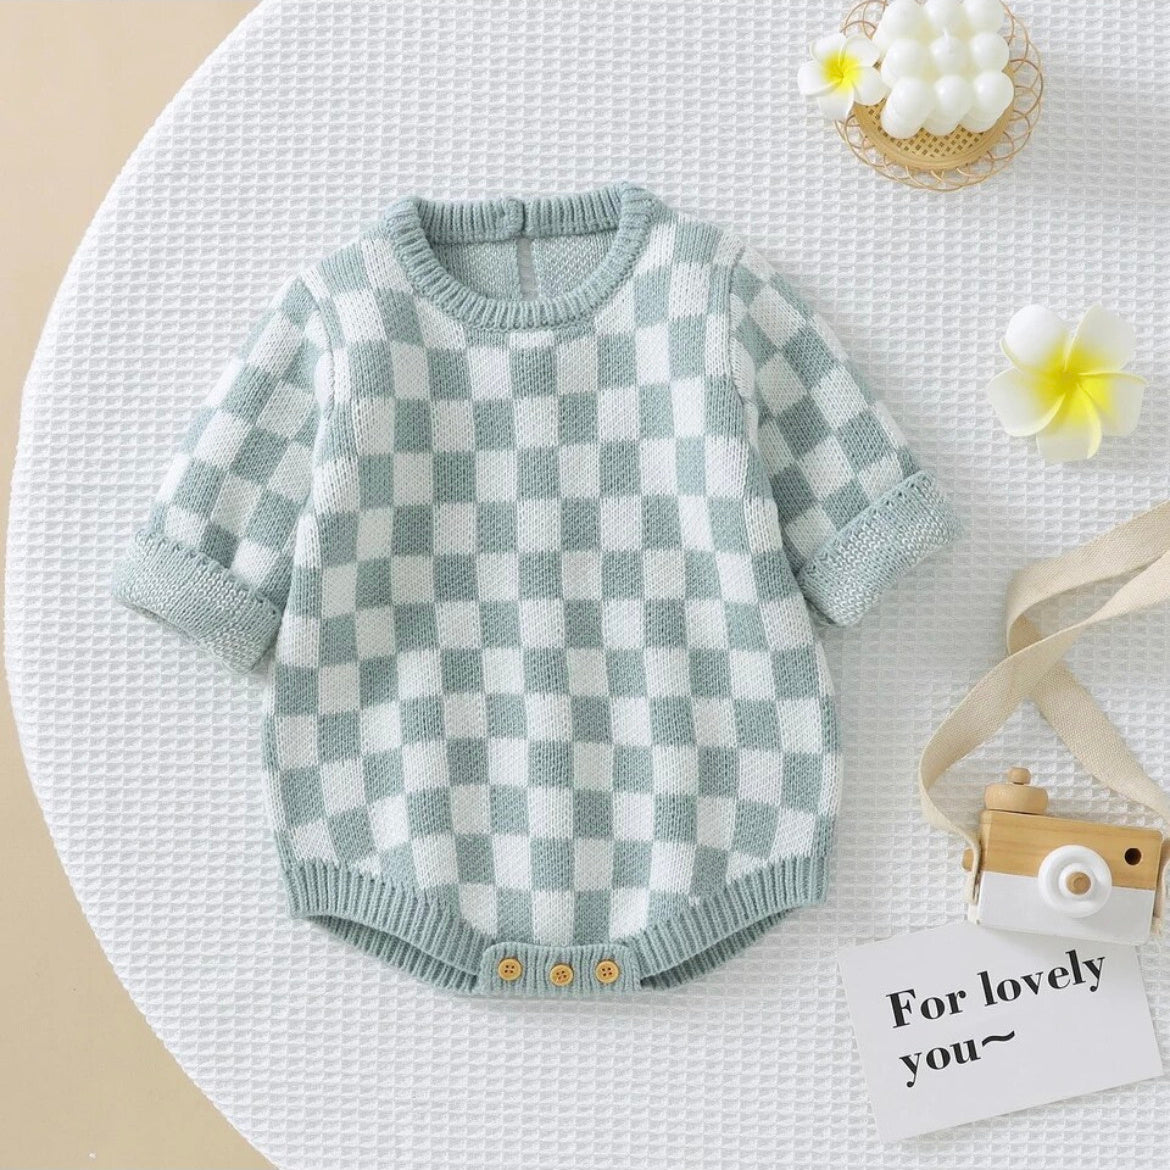 Louis Vuitton Baby Clothes 